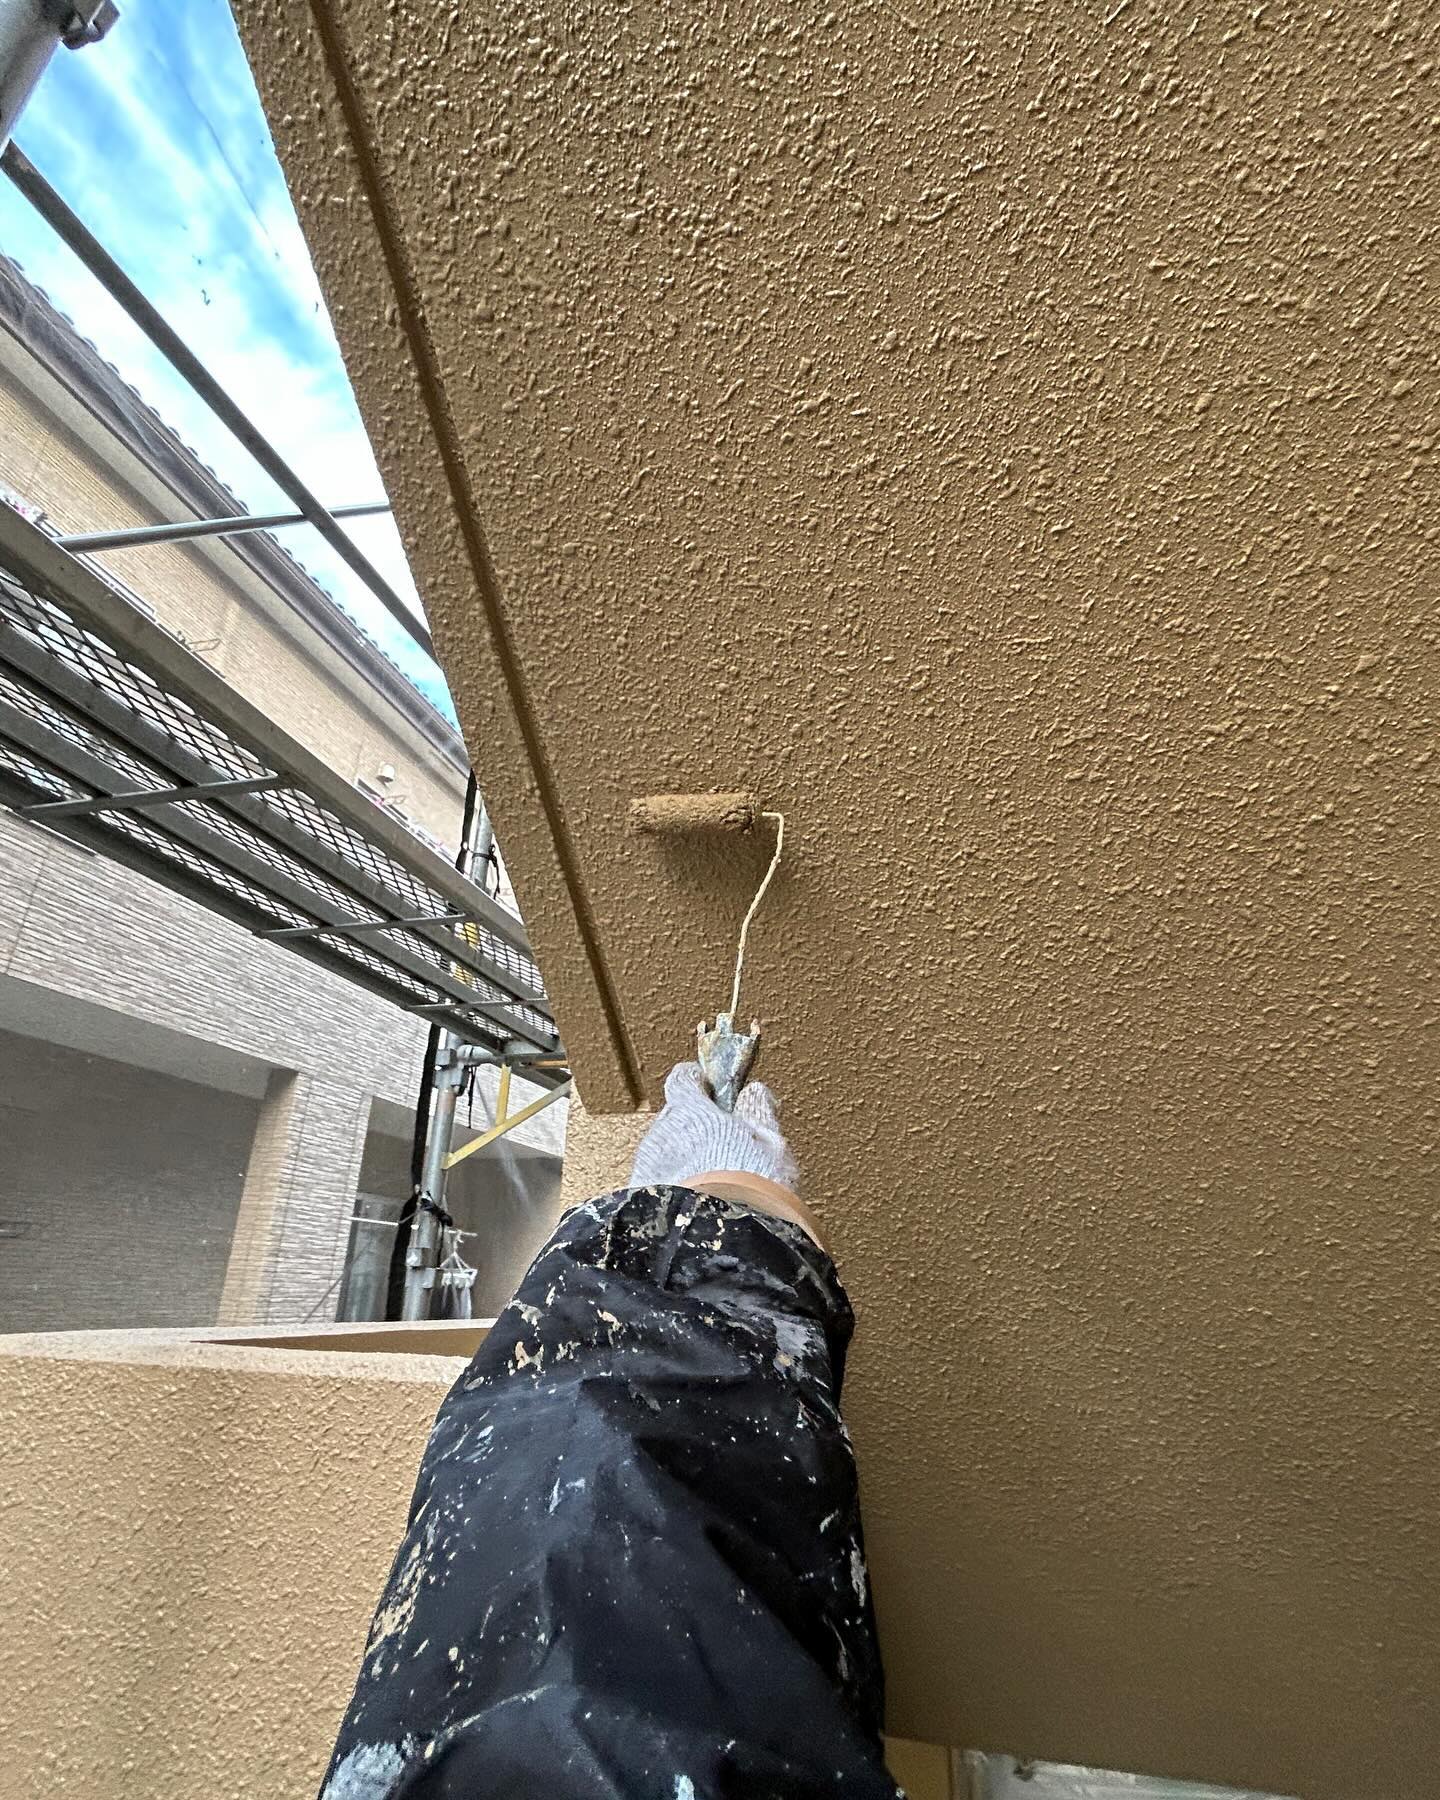 今日の塗装工事

磐田市にあるアパートの
天井、外壁の中塗りを行いました。

天井、外壁共にエスケー化研のプレミアムシリコンにて塗装しました。

塗り残しのないように
丁寧に塗装しました。